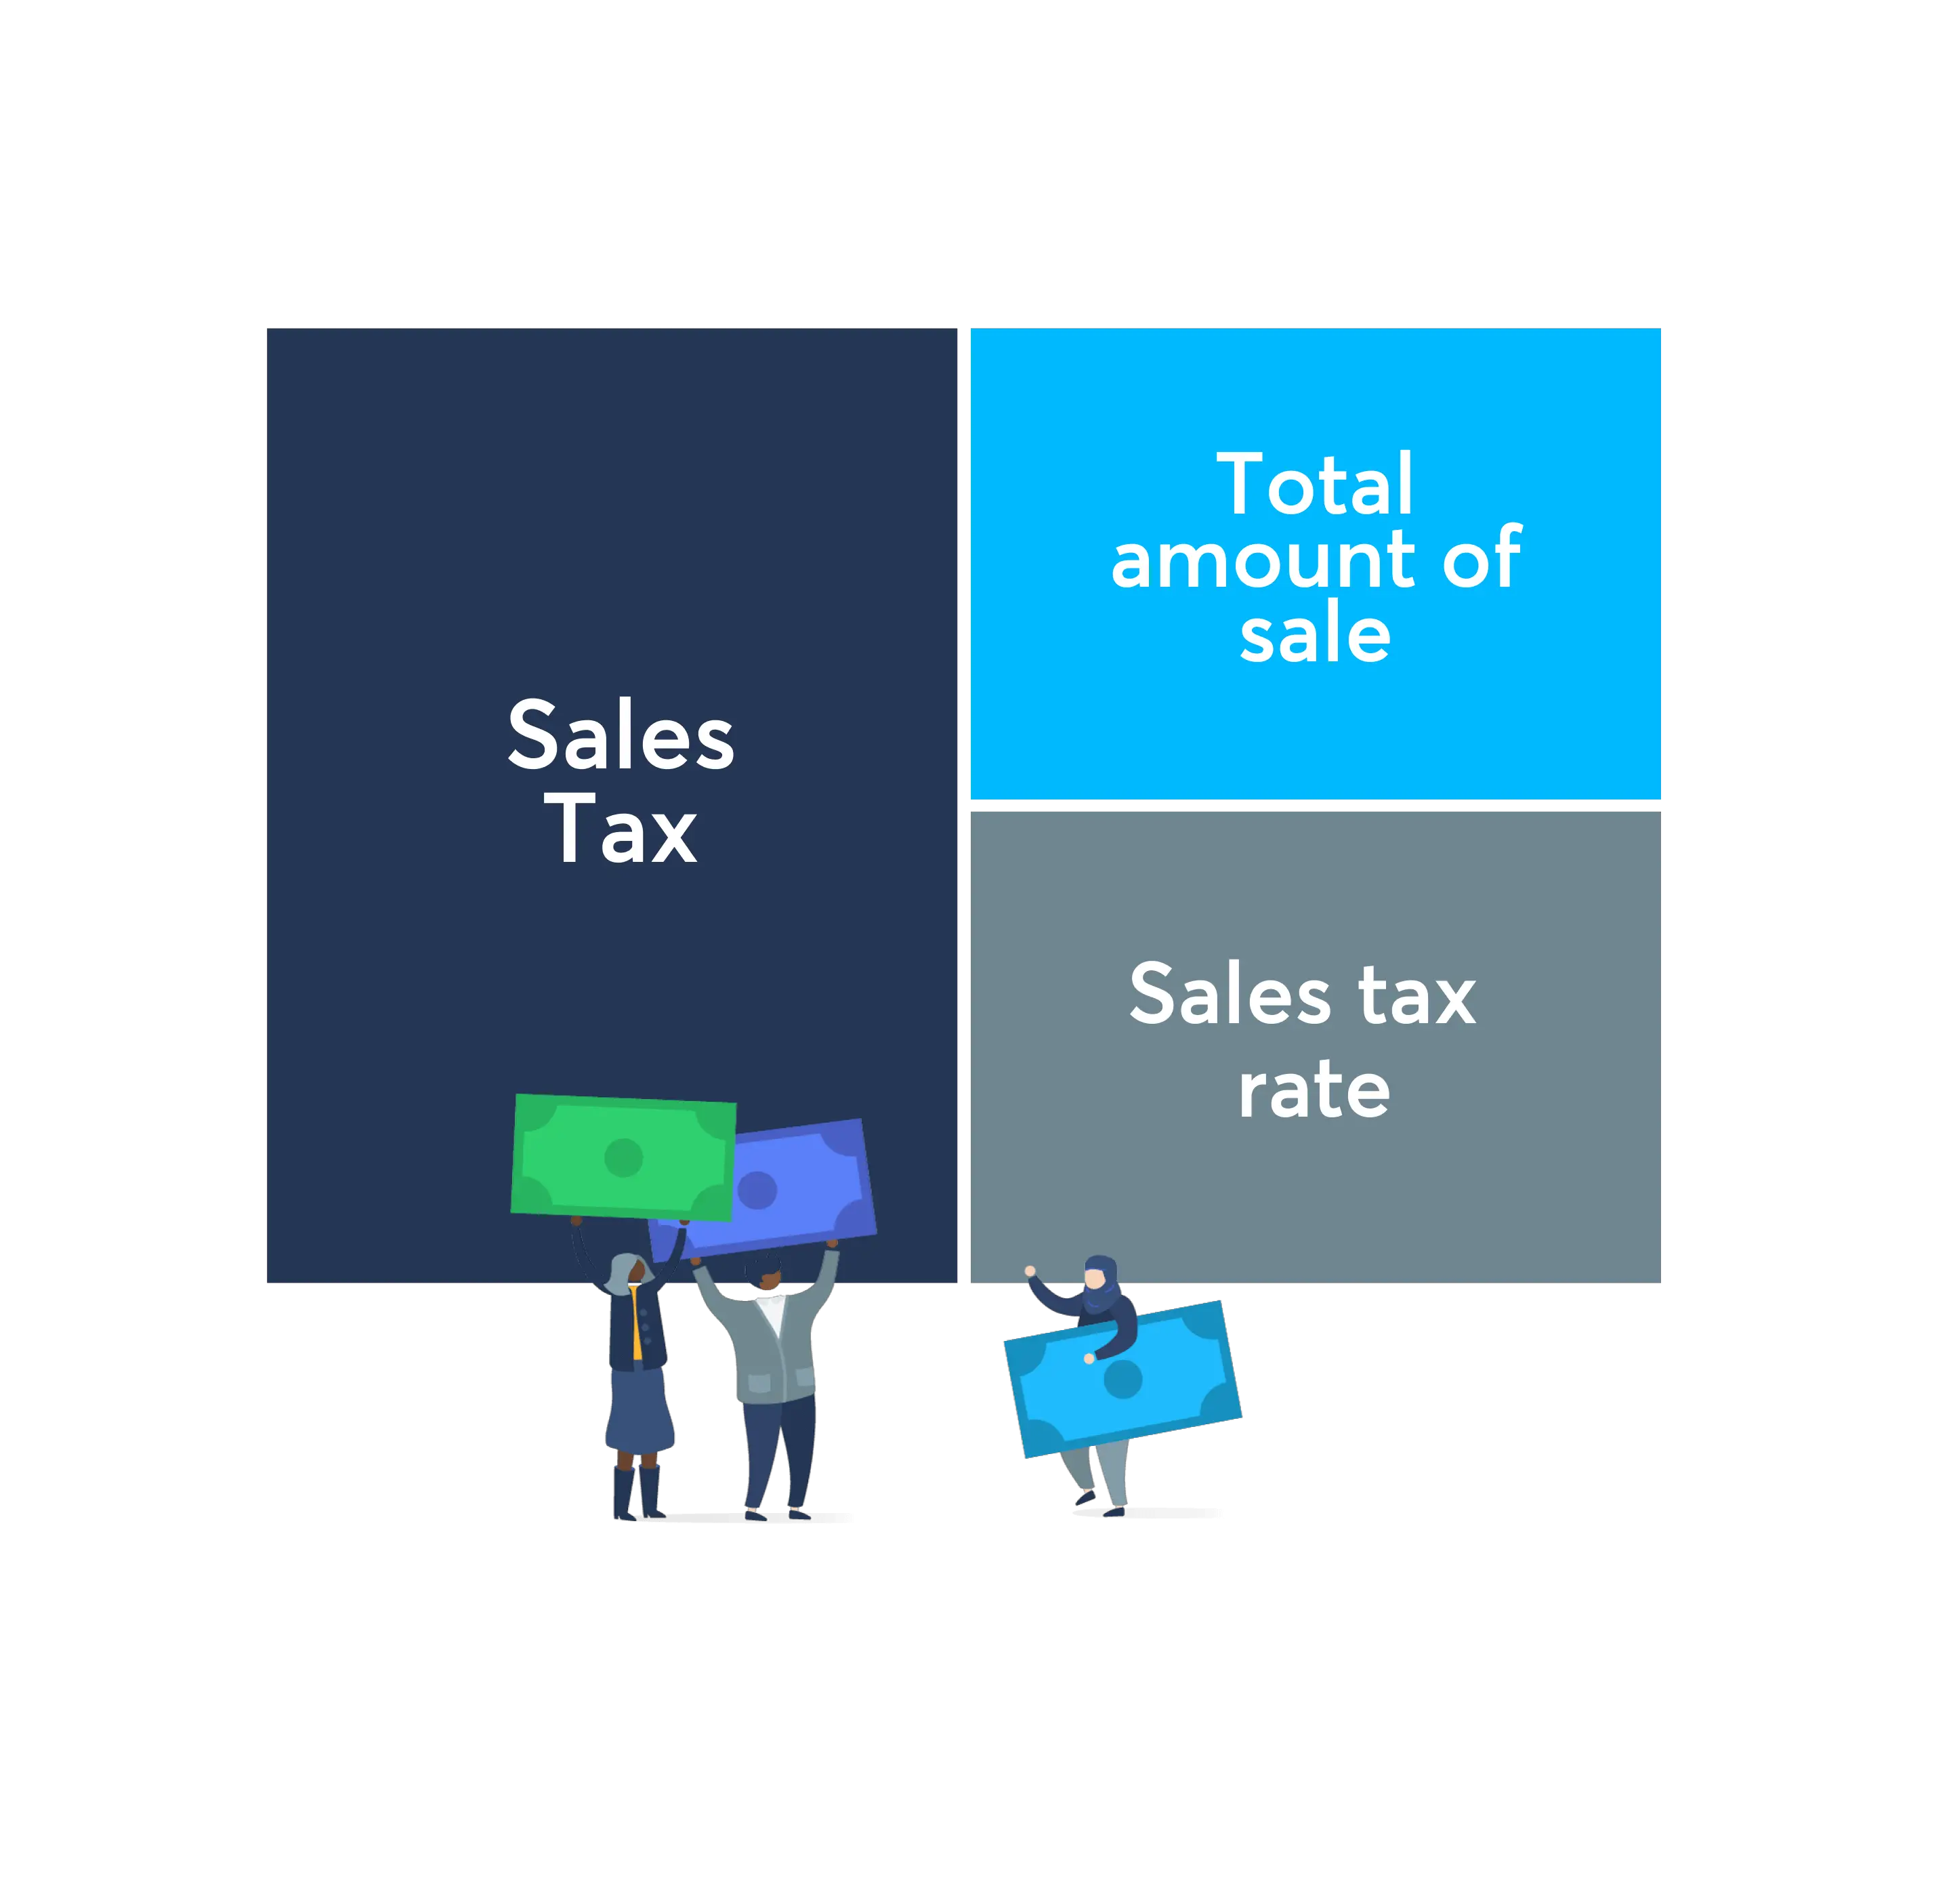 Minnesota Sales Tax